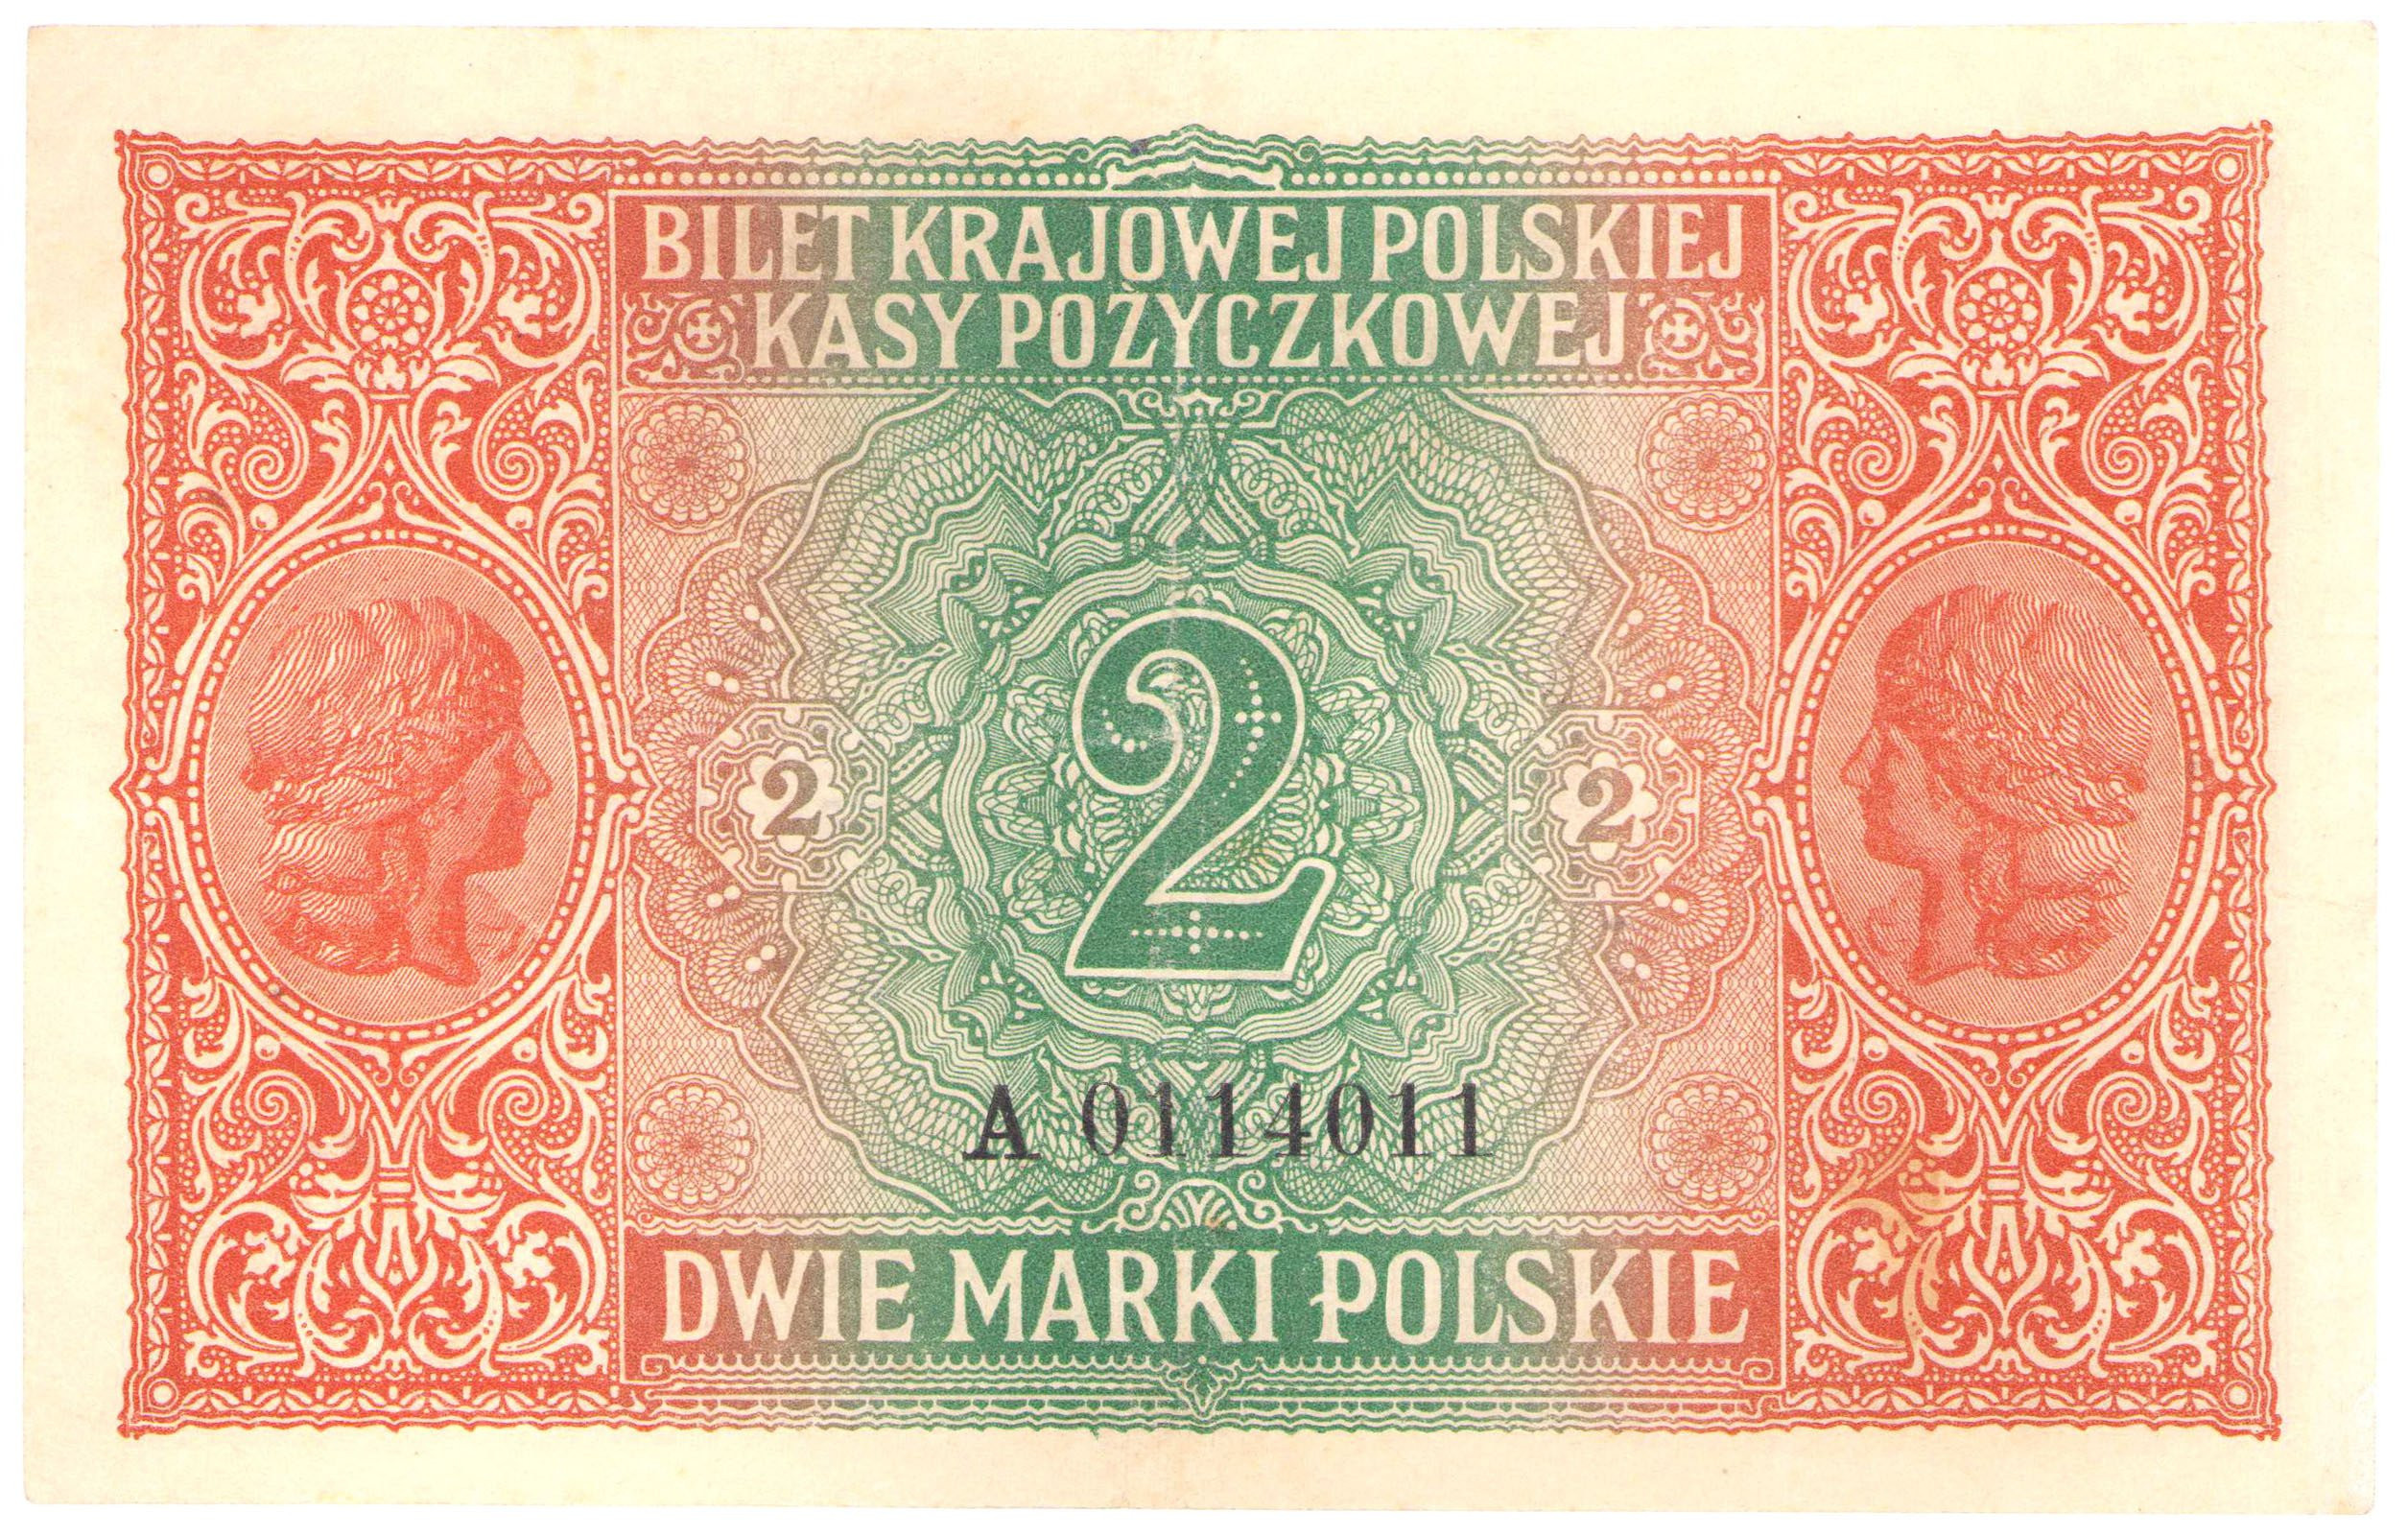 2 marki polskie 1916 seria A - jenerał - RZADKI